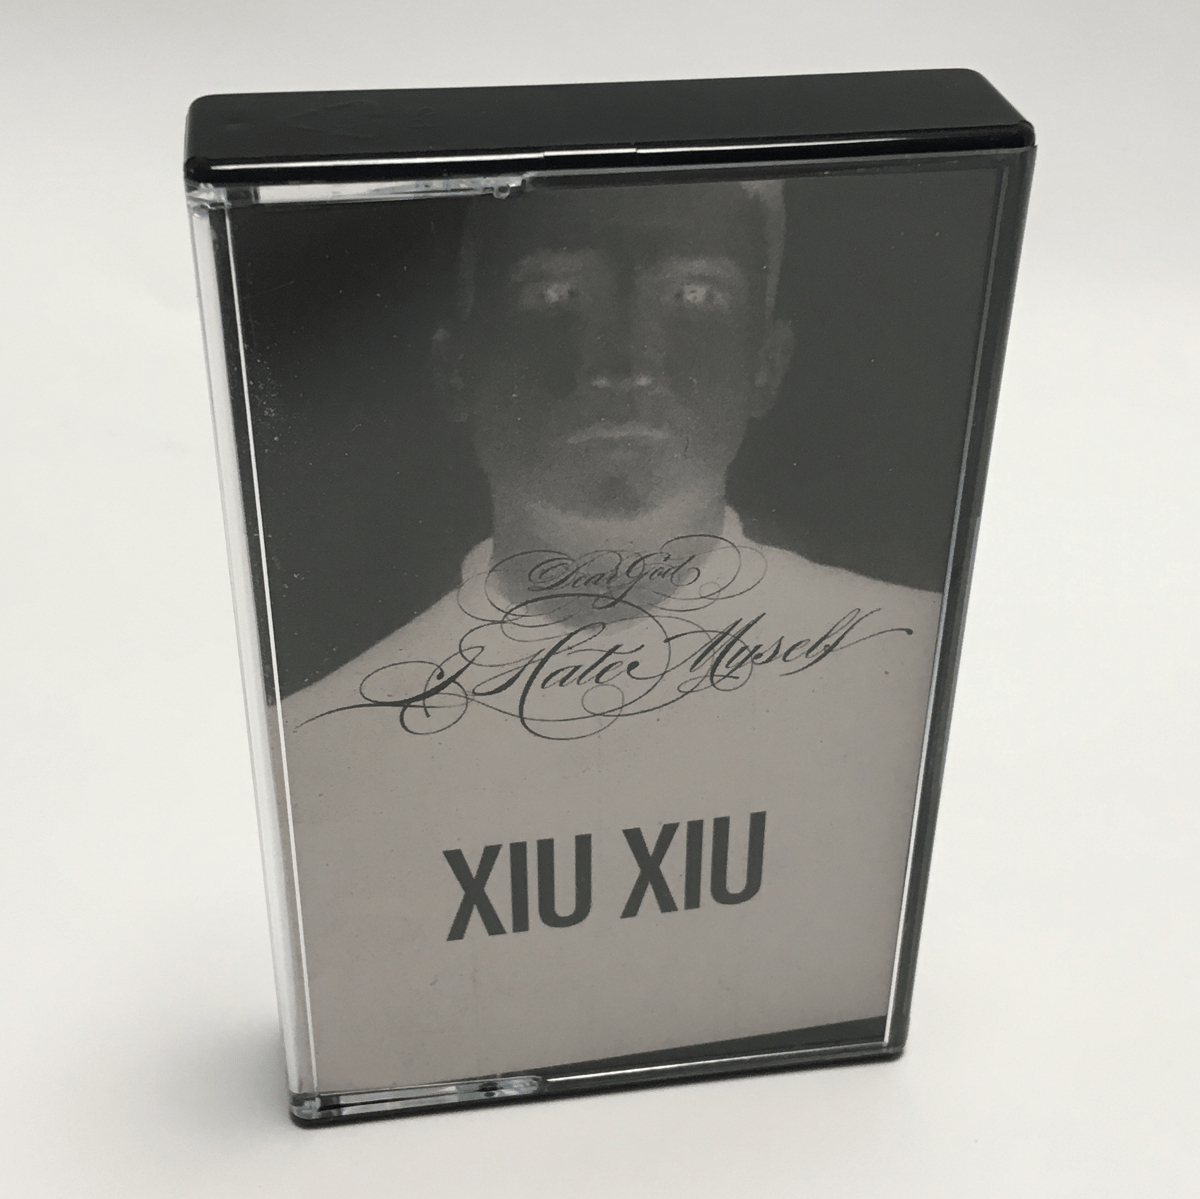 XIU XIU - Dear God I Hate Myself (2010) STORE EXCLUSIVE AUDIO CASSETTE